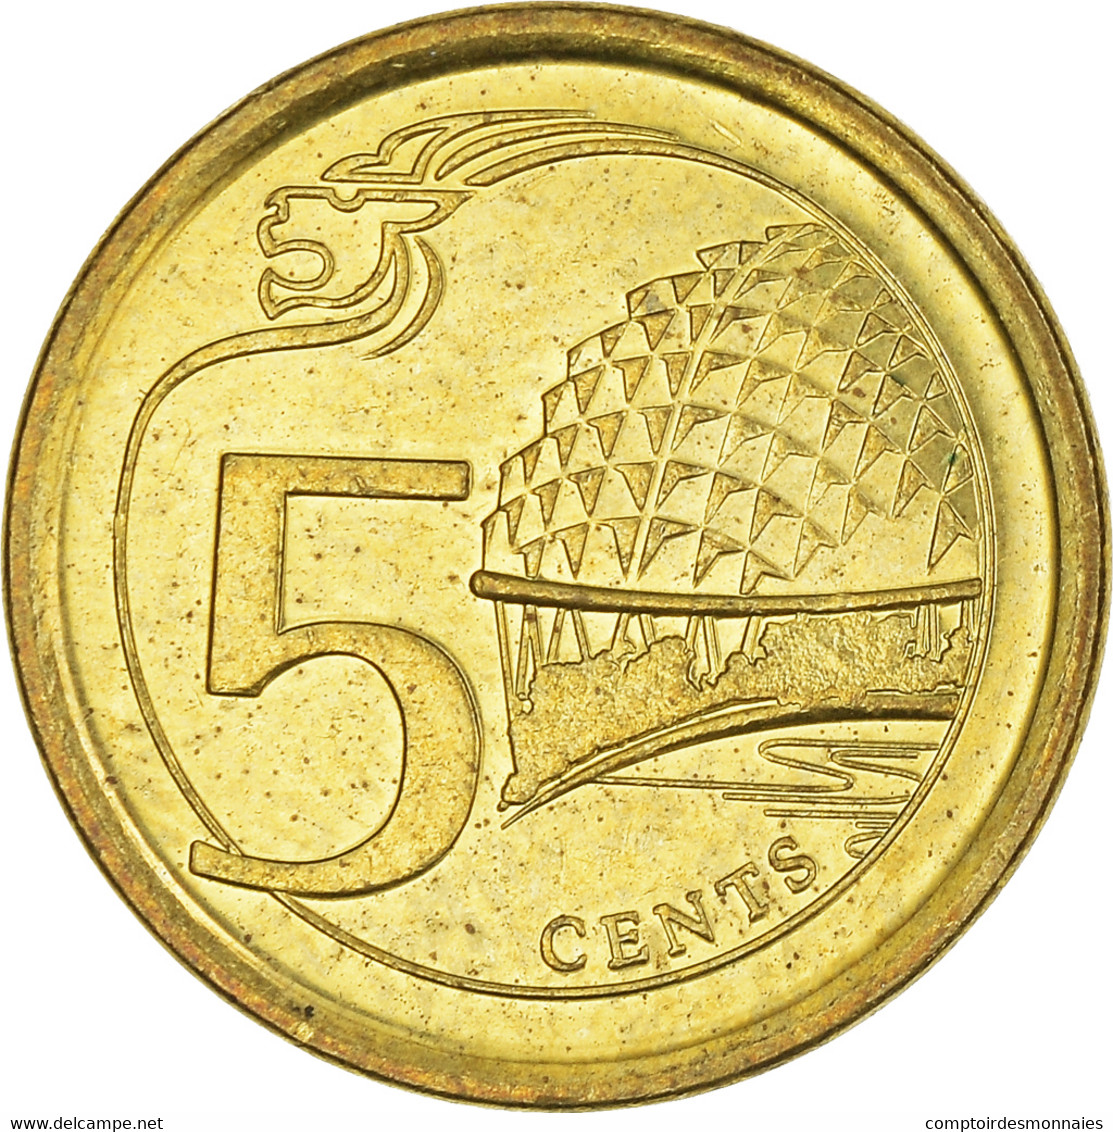 Monnaie, Singapour, 5 Cents, 2014 - Singapour